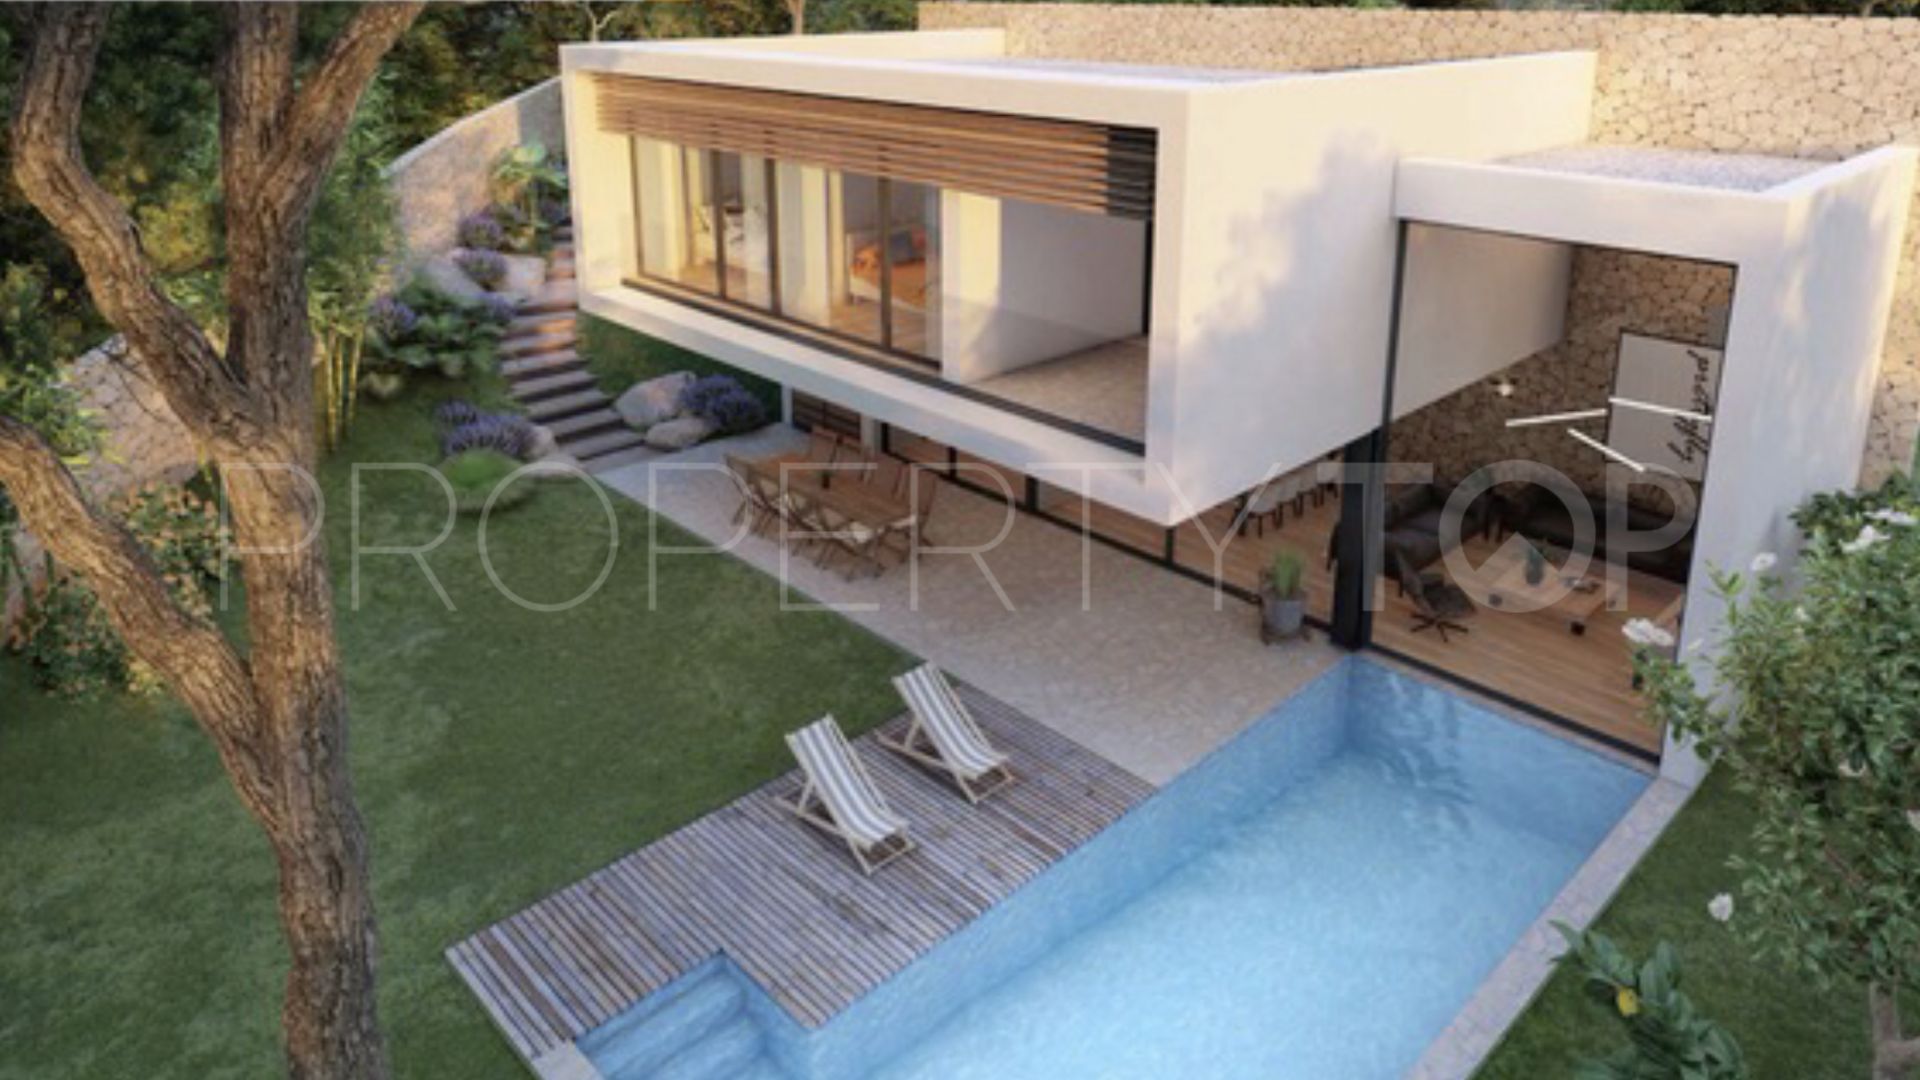 4 bedrooms villa in Gran Sol for sale